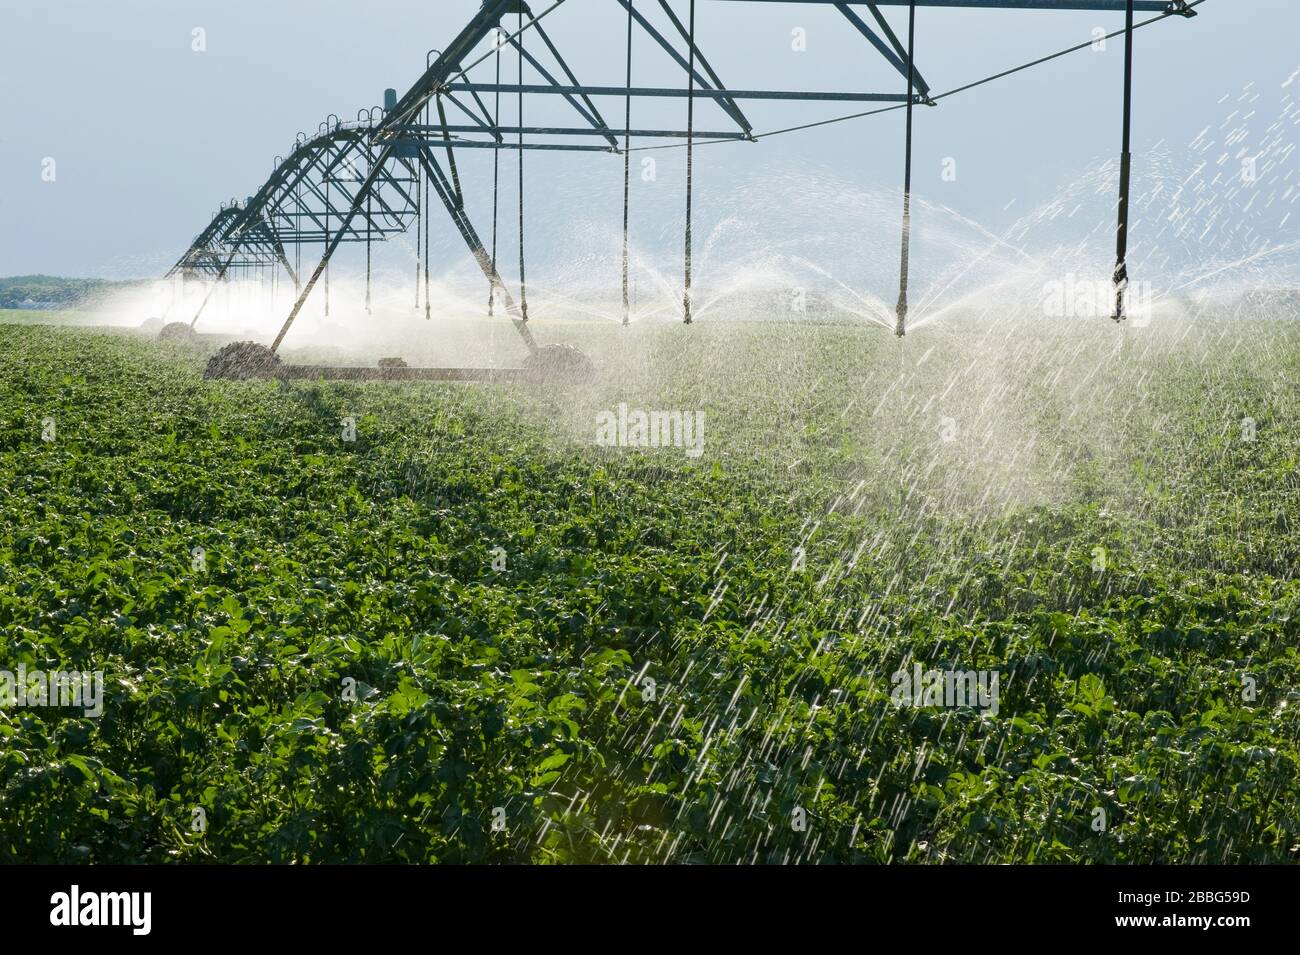 Un sistema de riego de pivote central irriga papas de crecimiento medio, Tiger Hills, Manitoba, Canadá Foto de stock